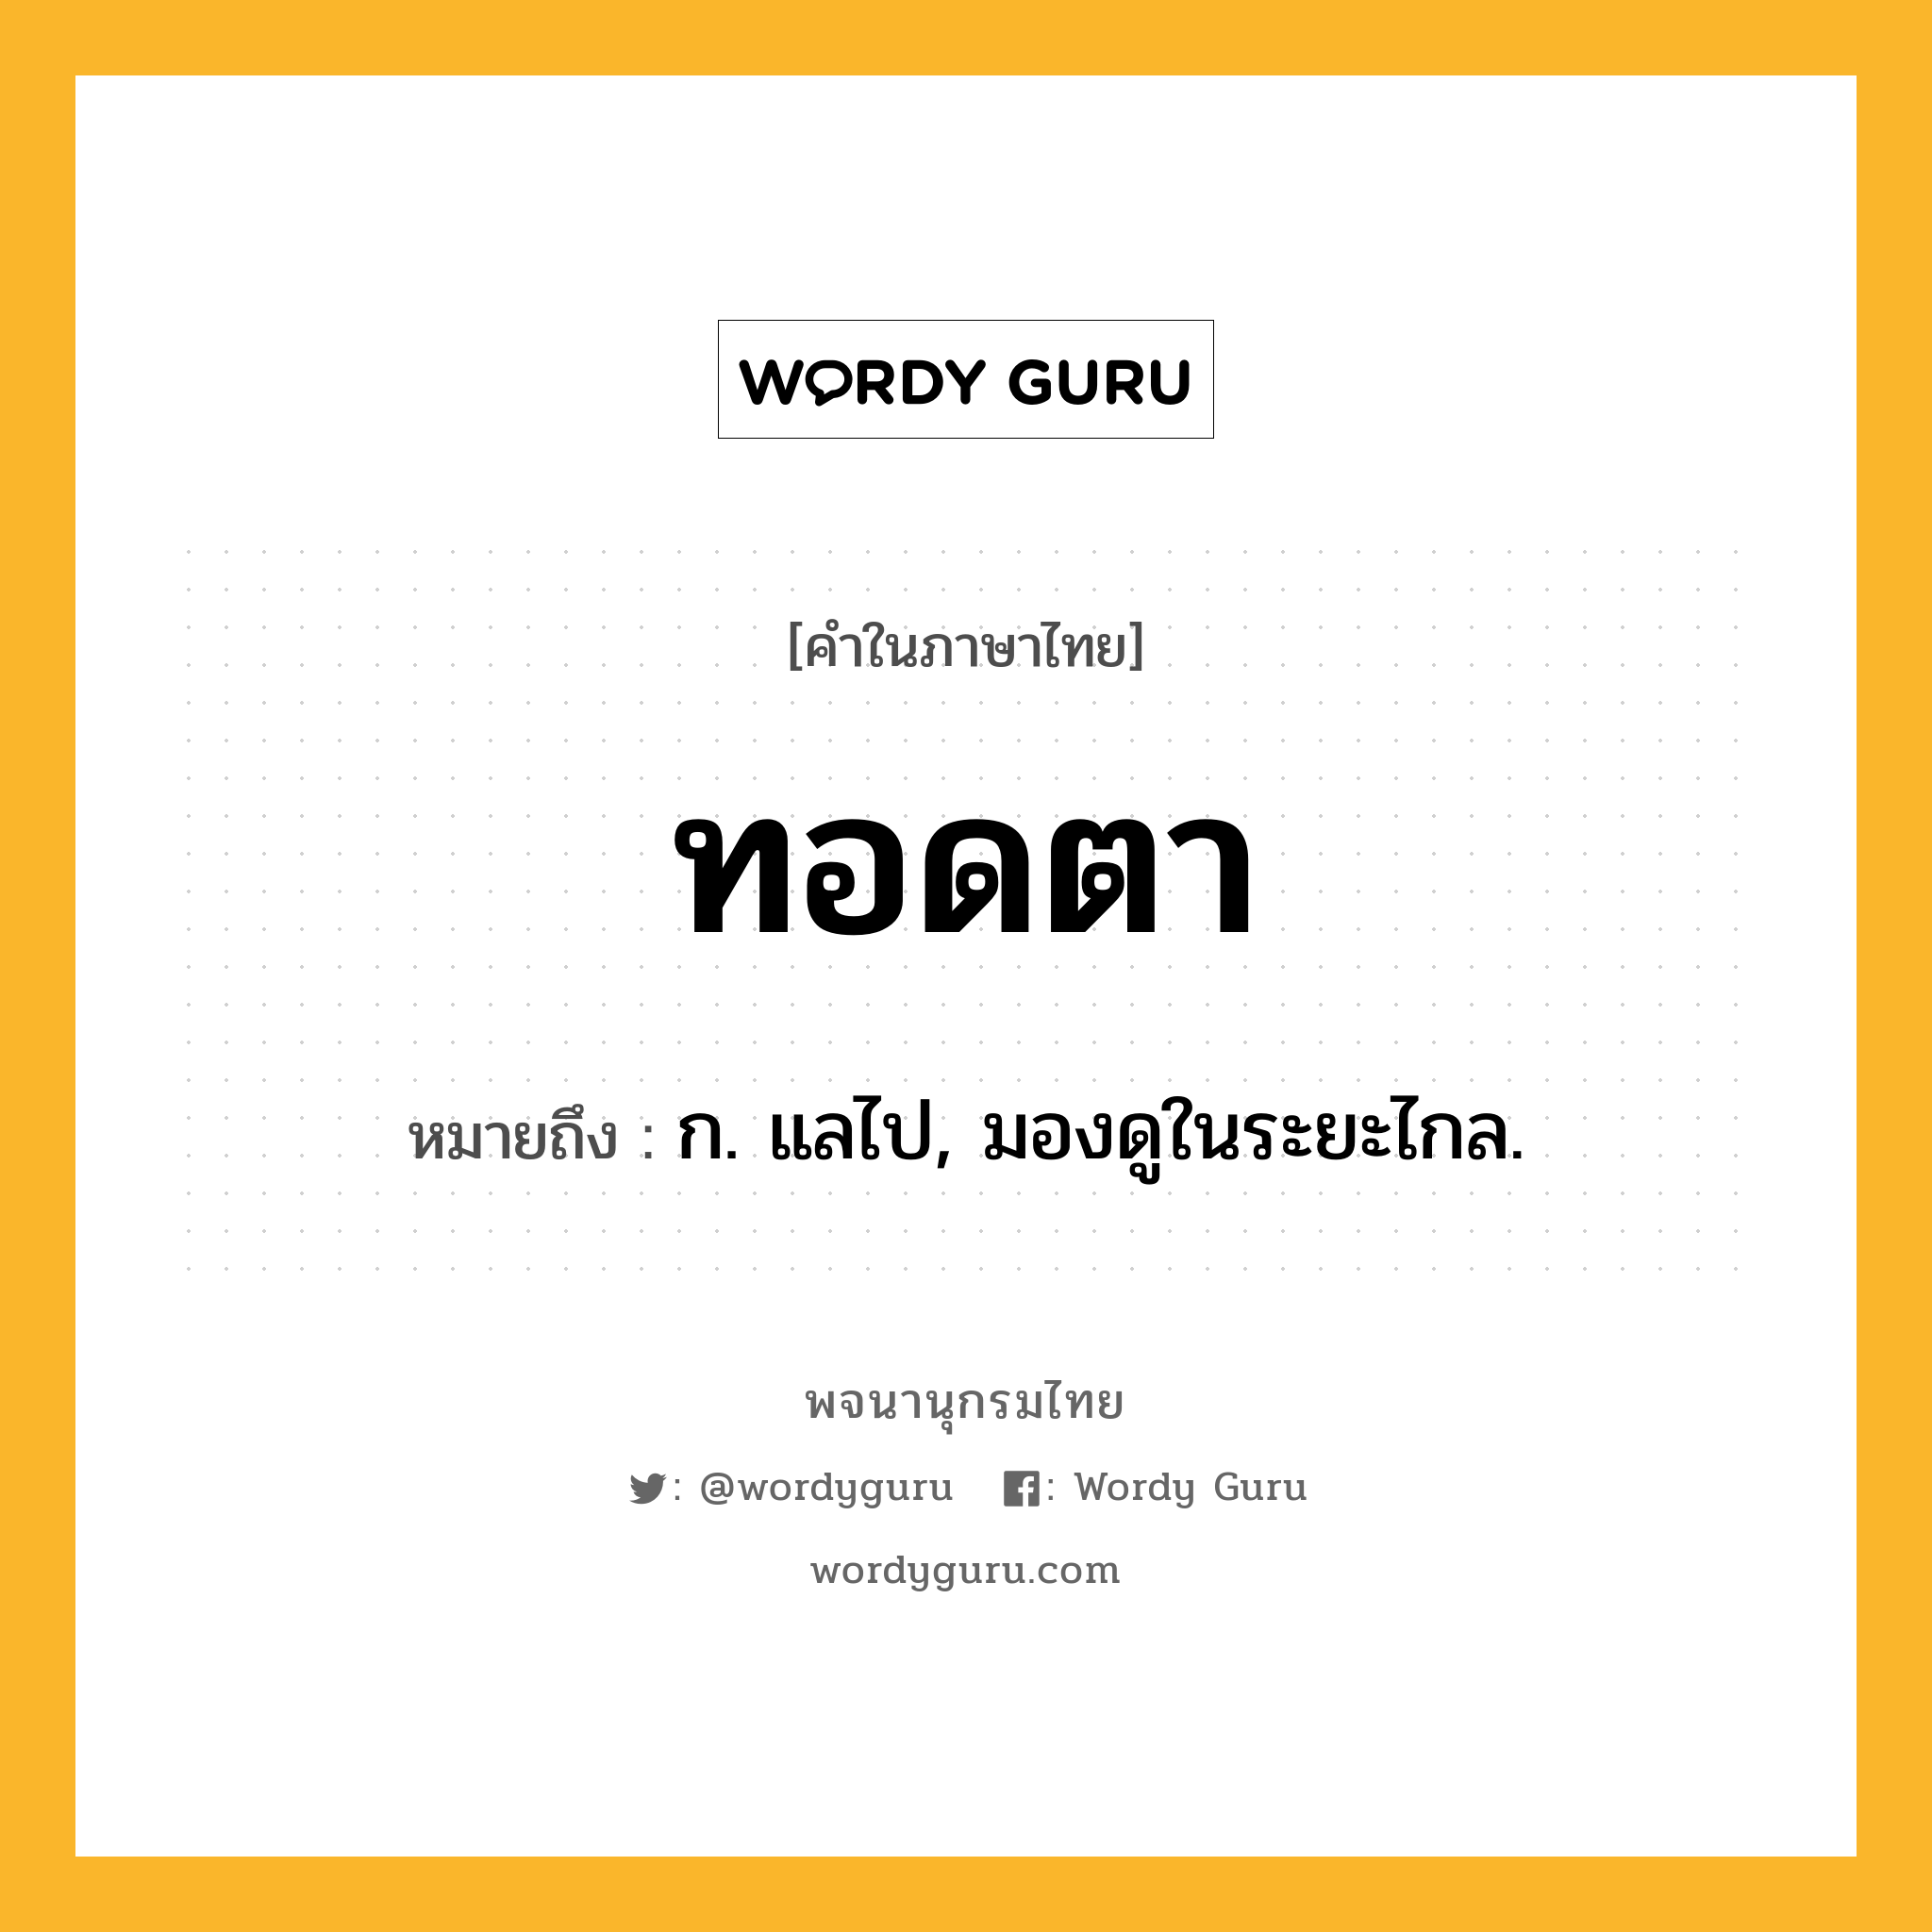 ทอดตา ความหมาย หมายถึงอะไร?, คำในภาษาไทย ทอดตา หมายถึง ก. แลไป, มองดูในระยะไกล.